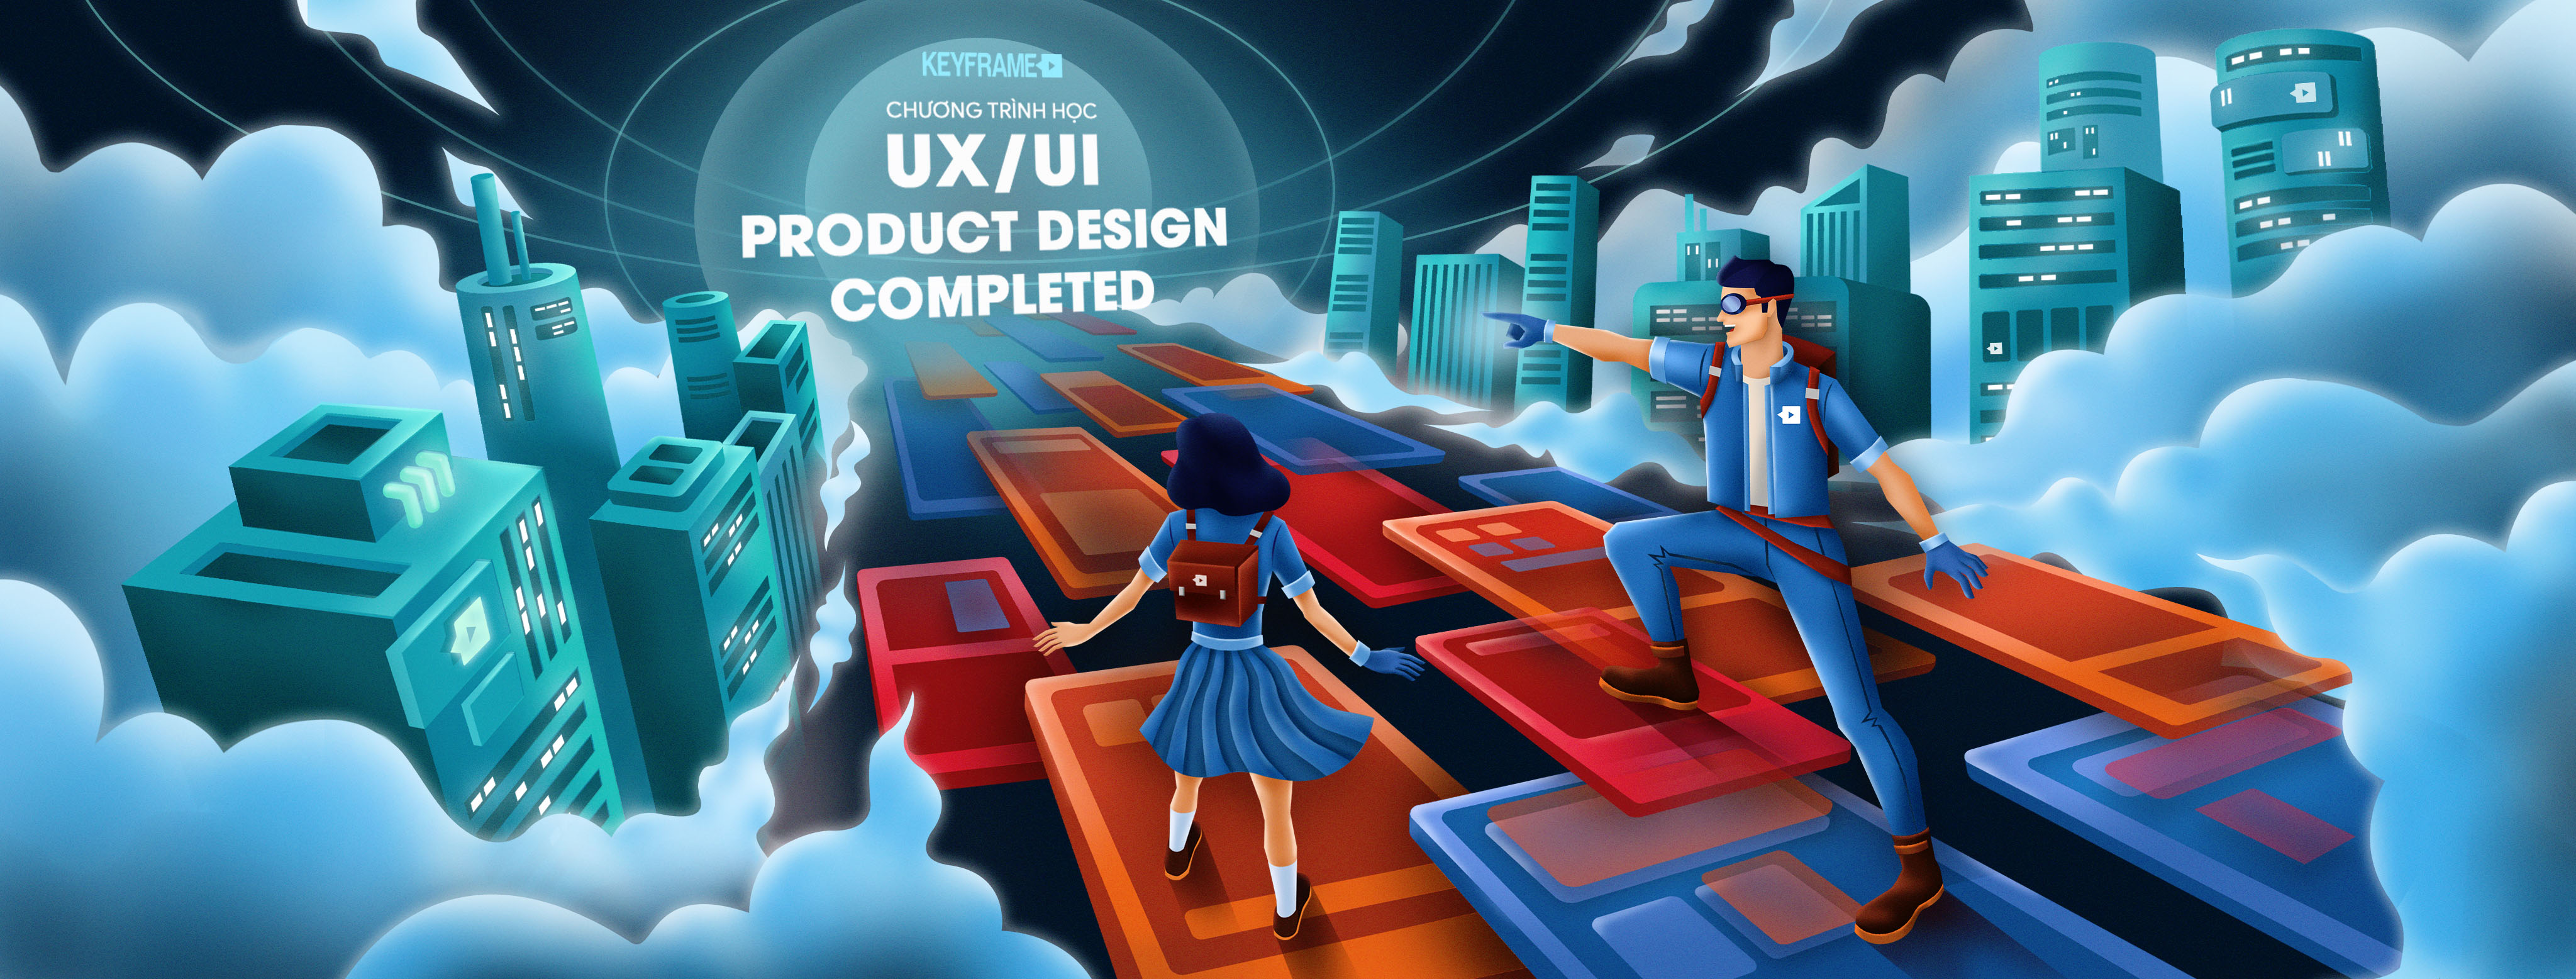 Trở thành UX/UI Designer toàn diện tư duy và kỹ năng thiết kế